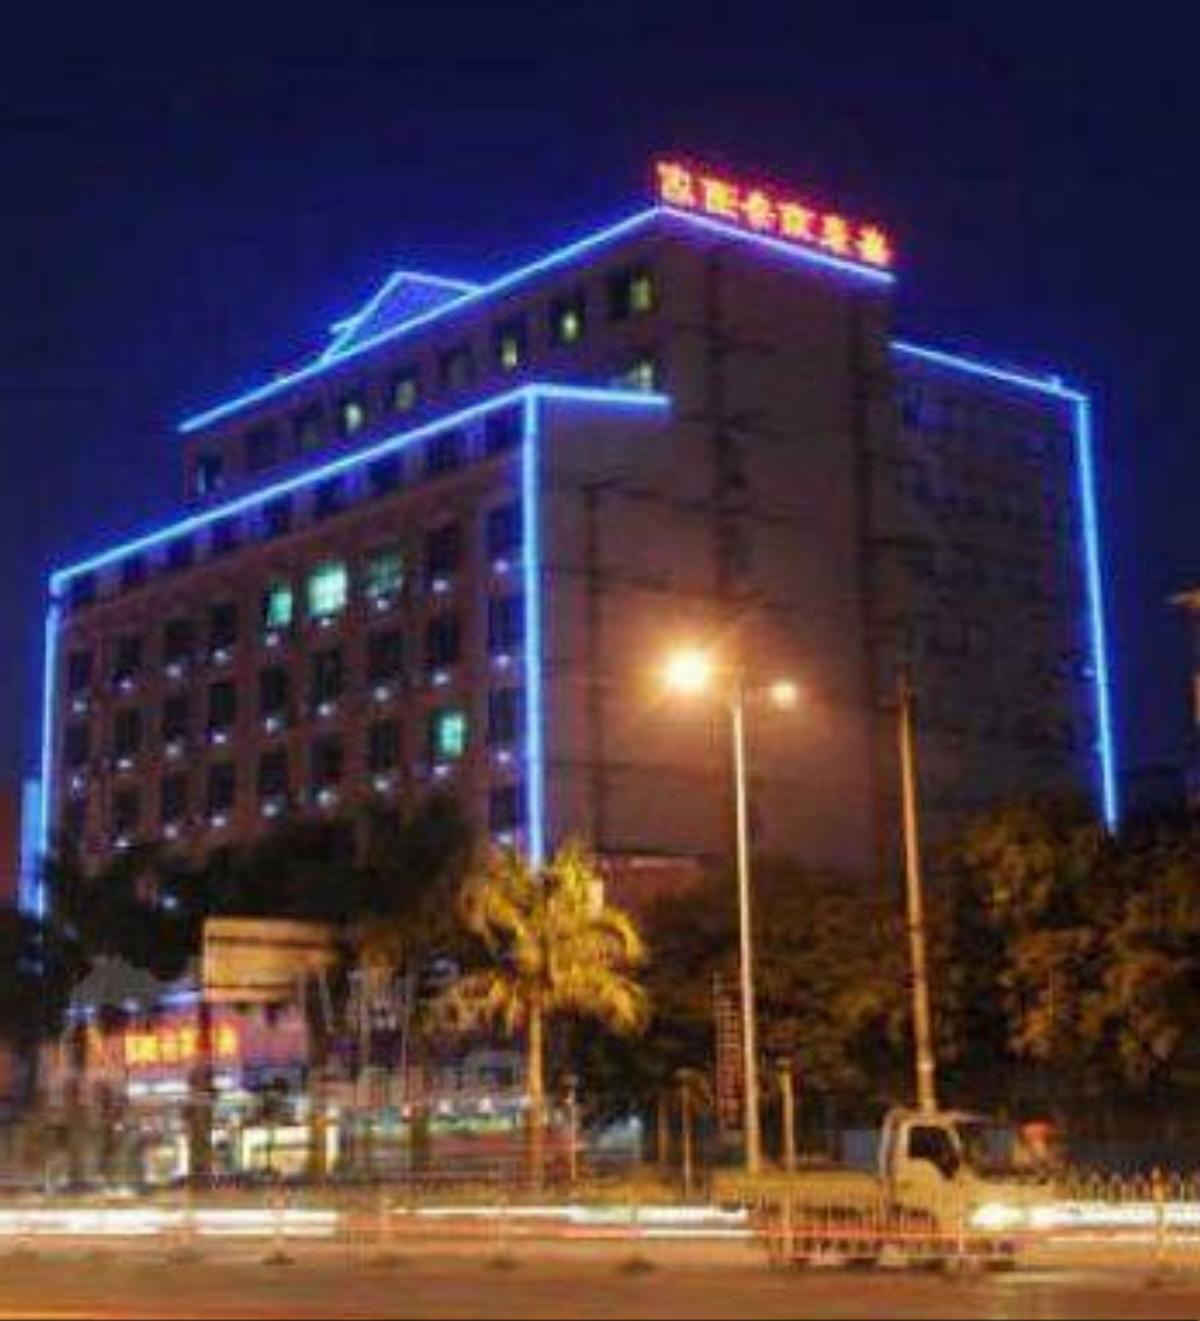 Guangxi Yulin Shenghao Business Hotel